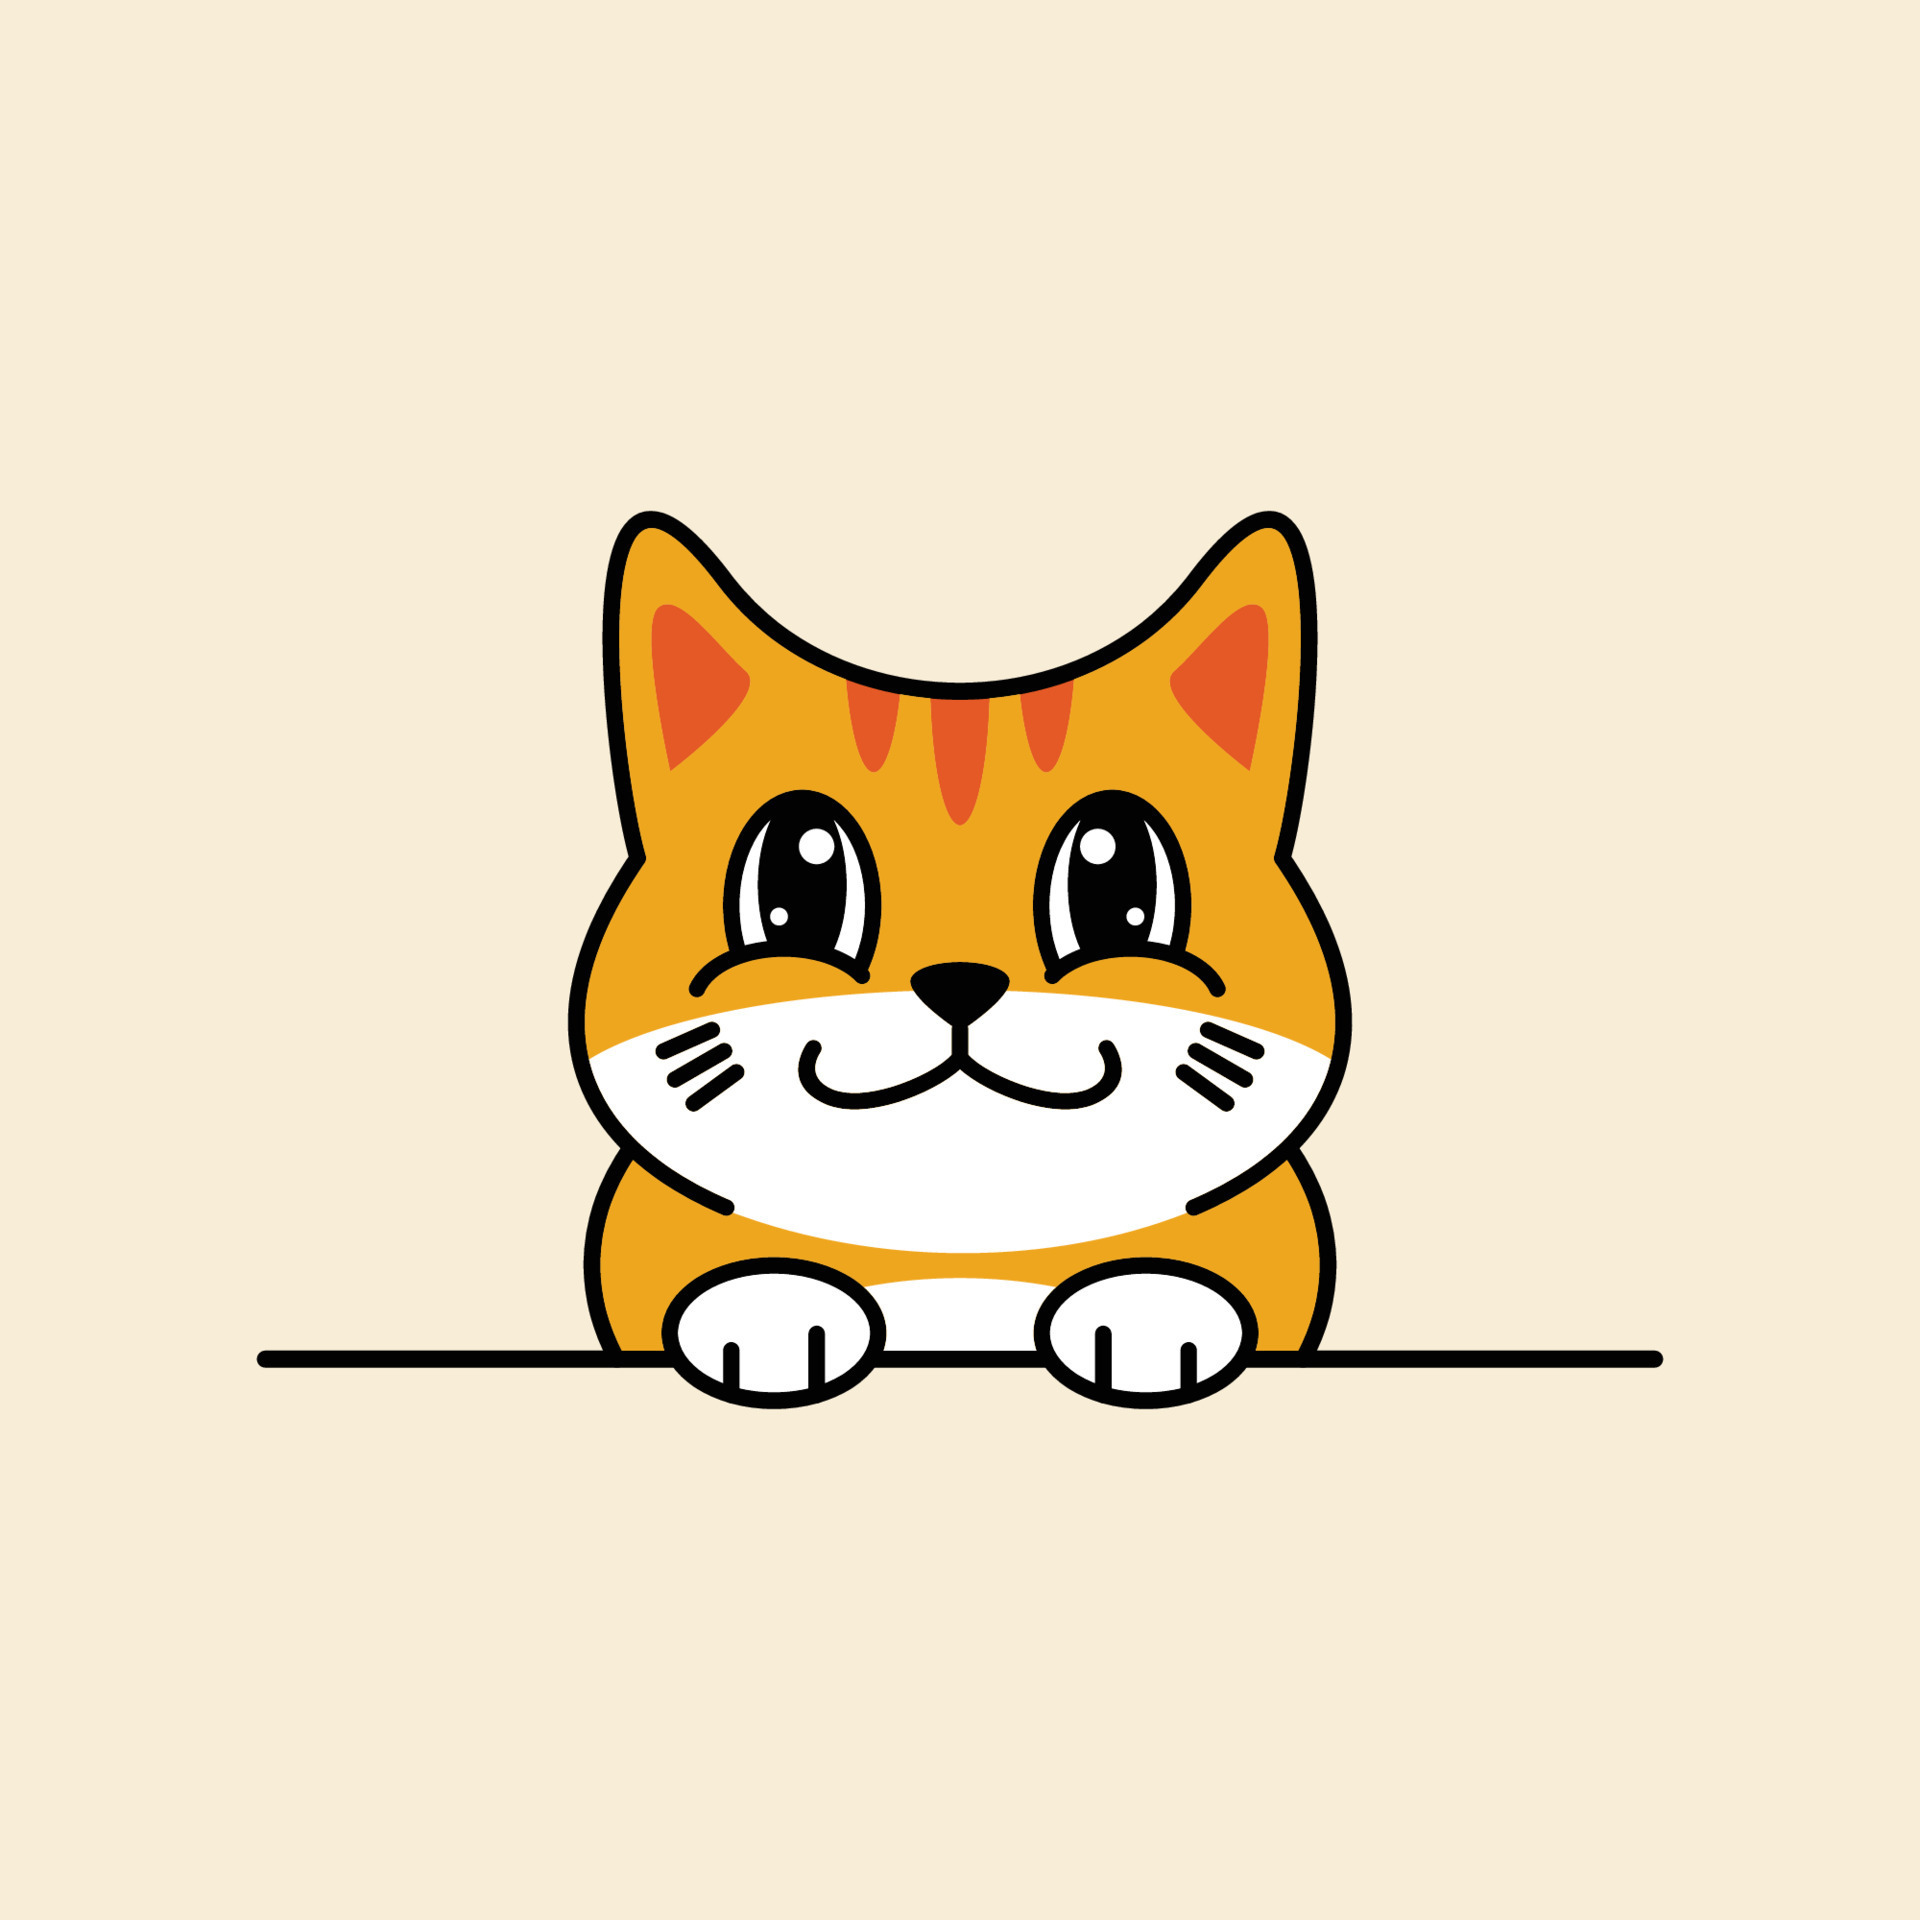 Simple minimalist cartoon cute cat logo 9208622 Vector Art at Vecteezy